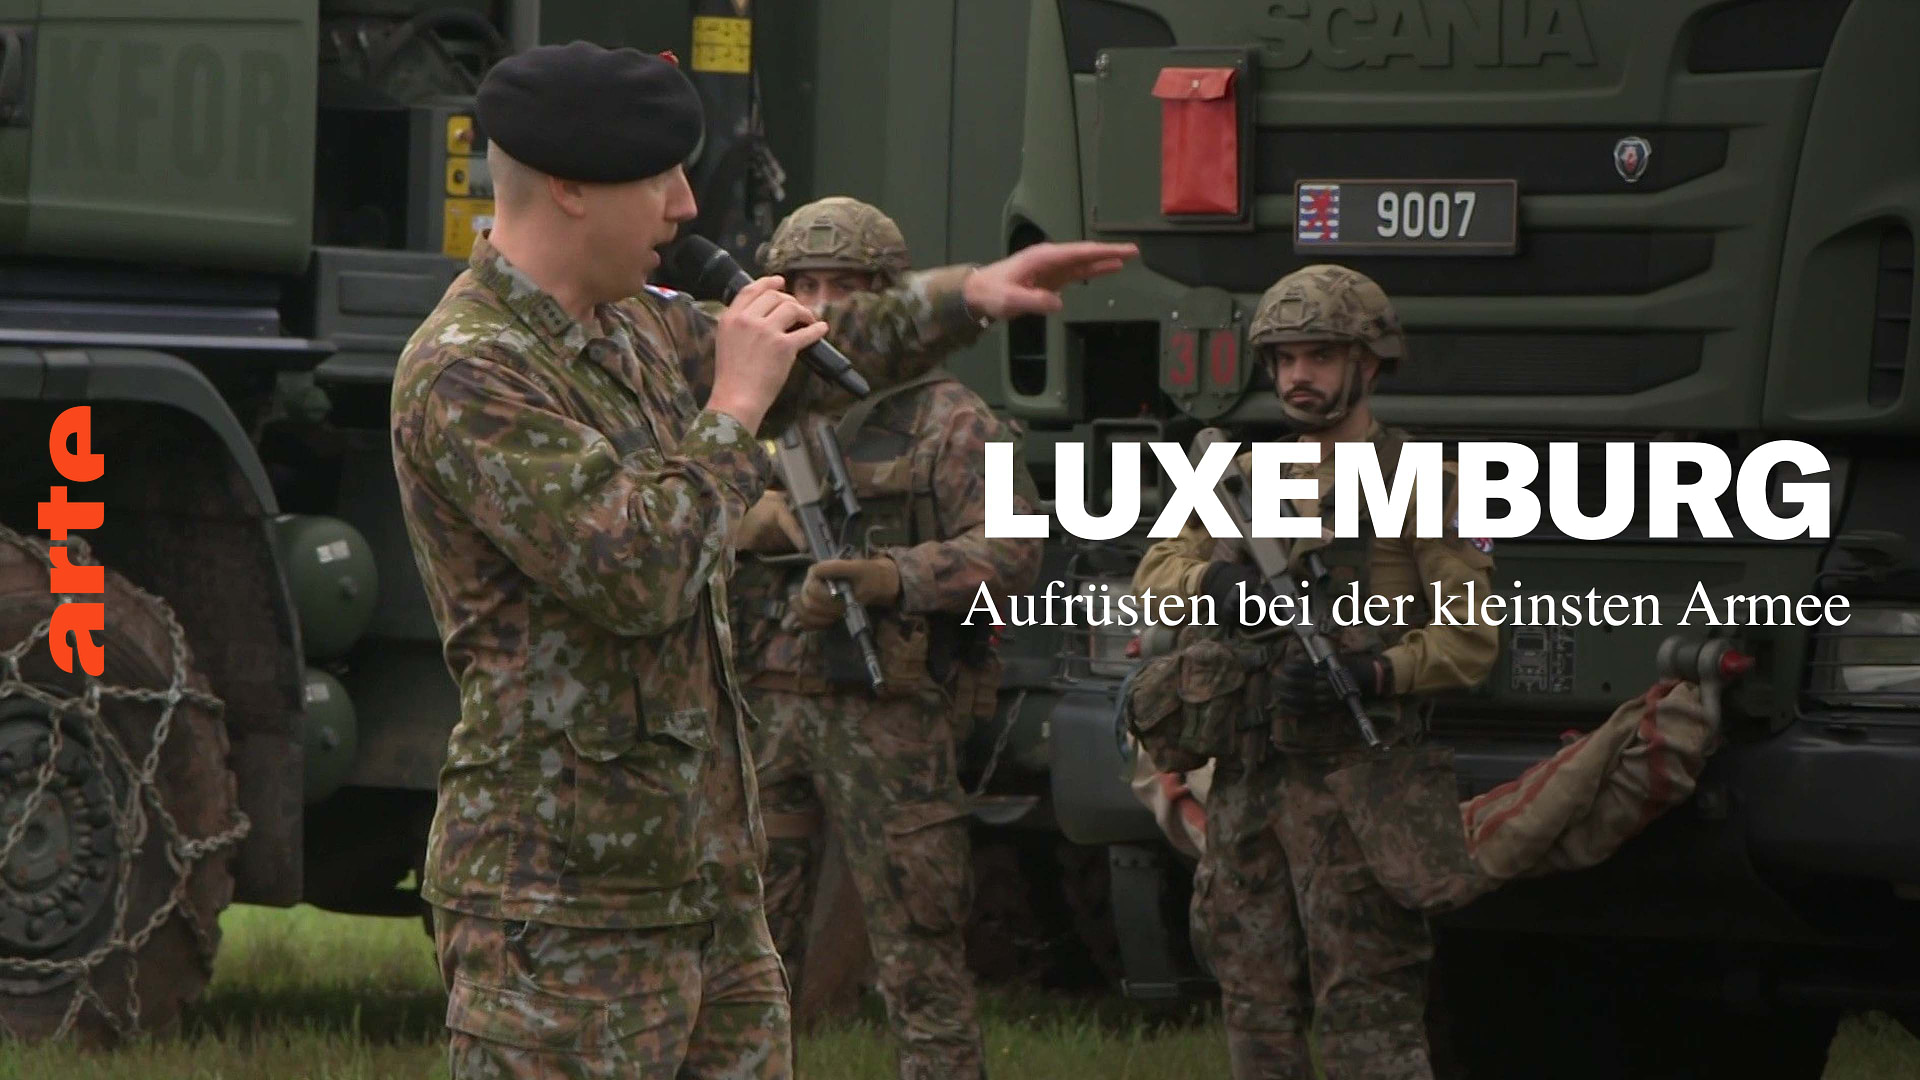 Luxemburg: Aufrüsten bei der kleinsten Armee